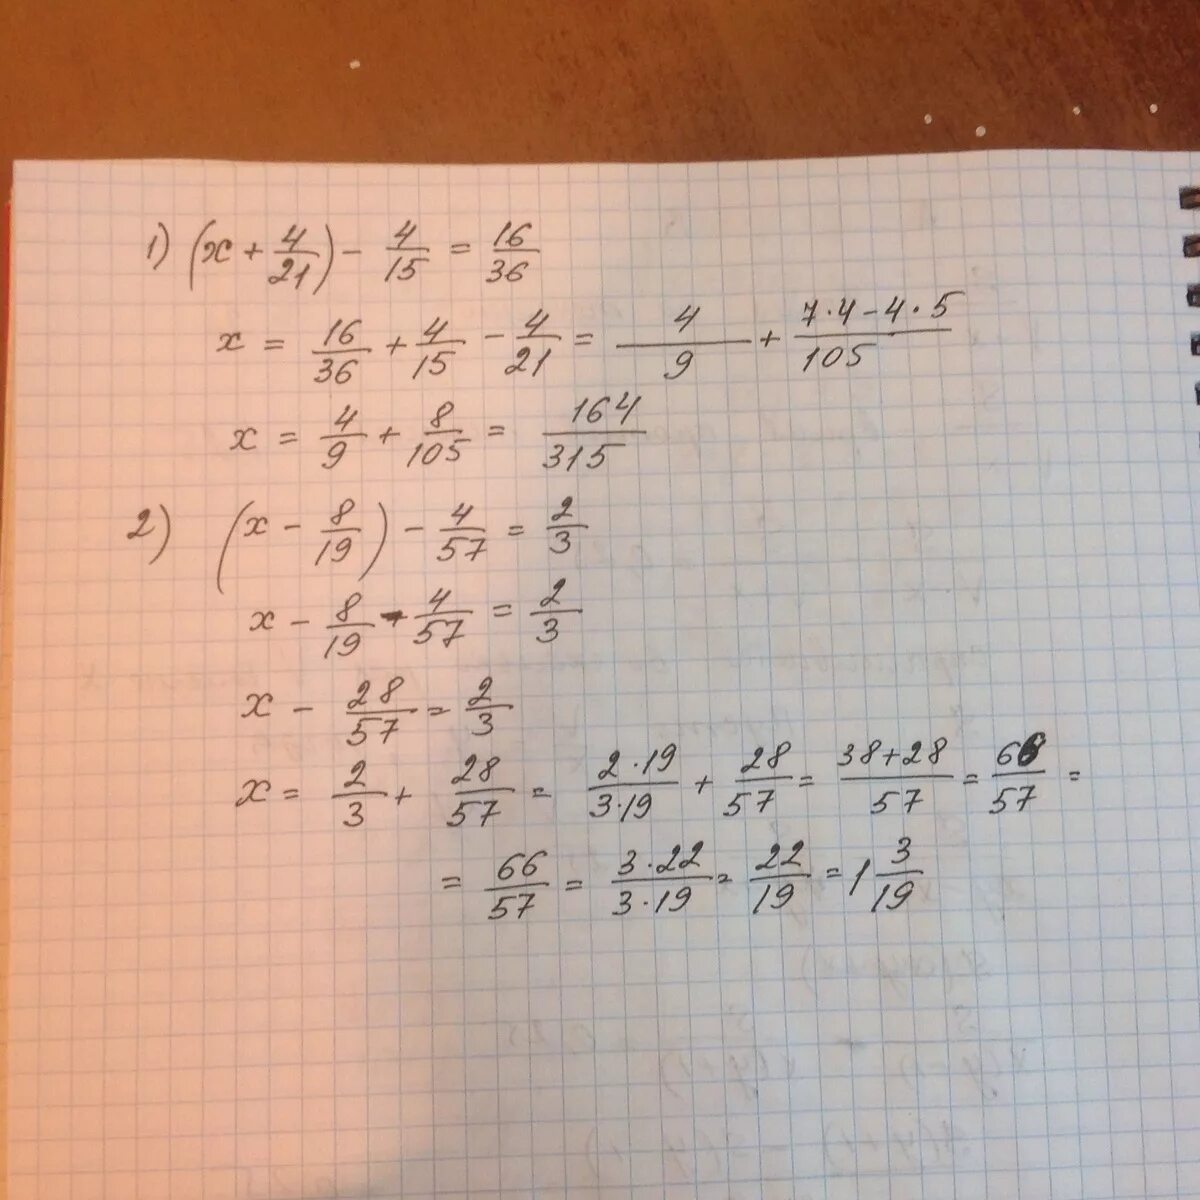 21 19х 4х2 х2 15 2х. Решение 4x+2x-1,4=8,2. 4x4+4x3-2x2+4x+1. X+2=8 уравнения. Уравнение x2=a.